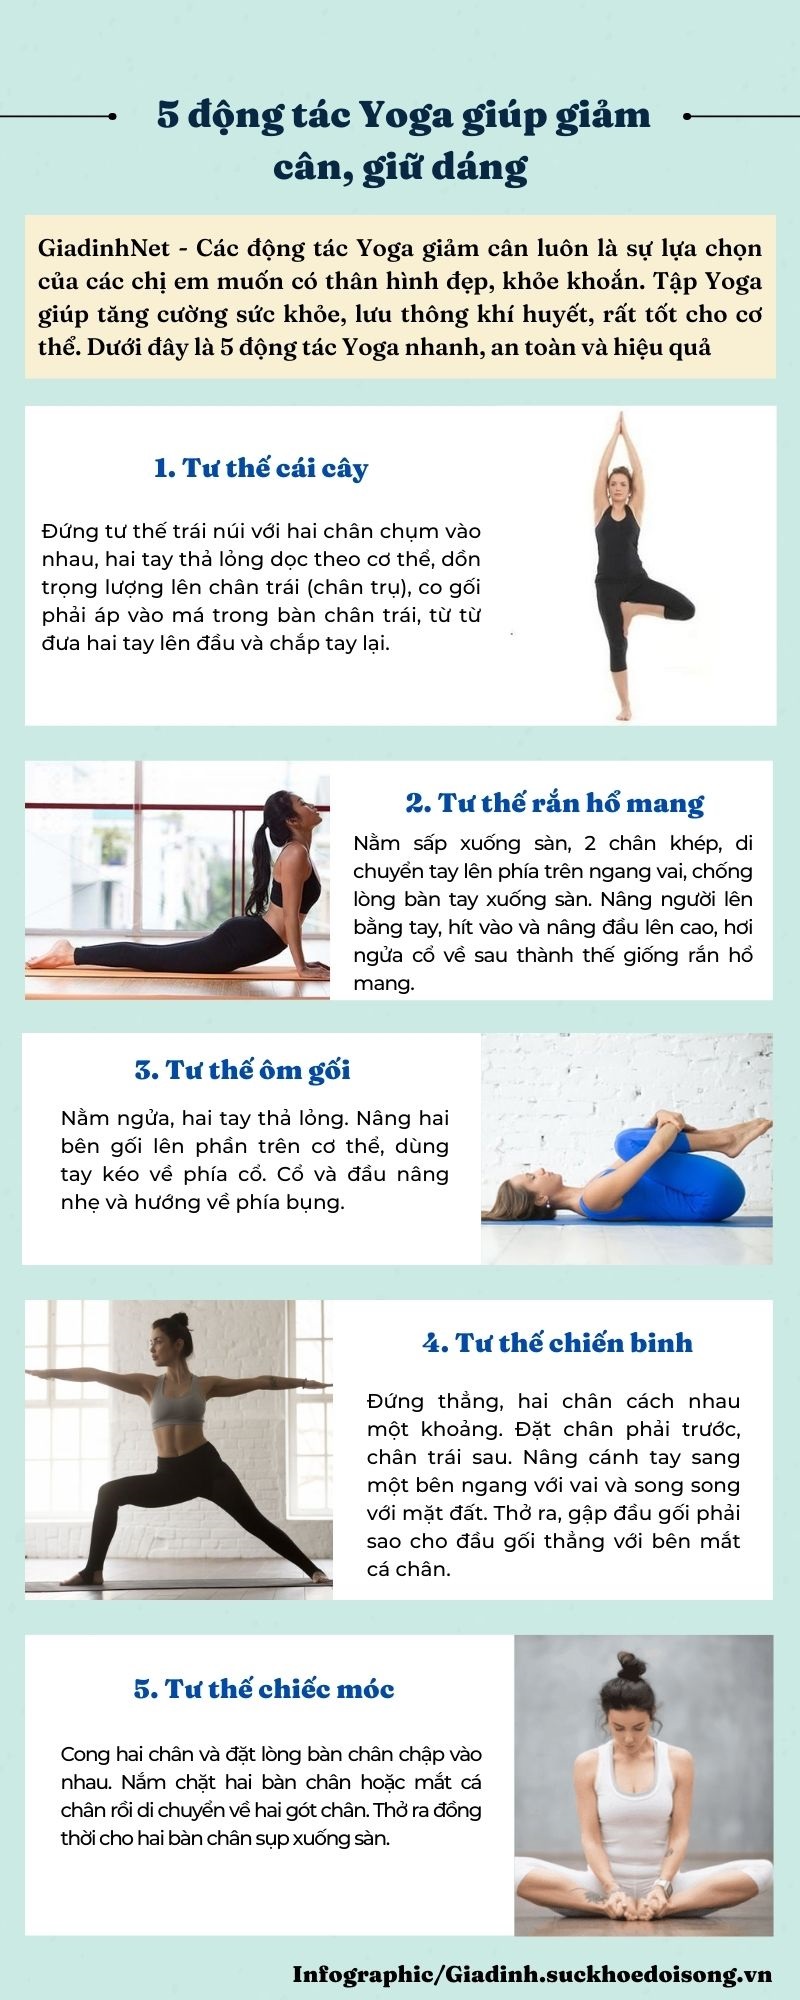  5 động tác Yoga giúp giảm cân, giữ dáng, dễ thực hiện - Ảnh 1.